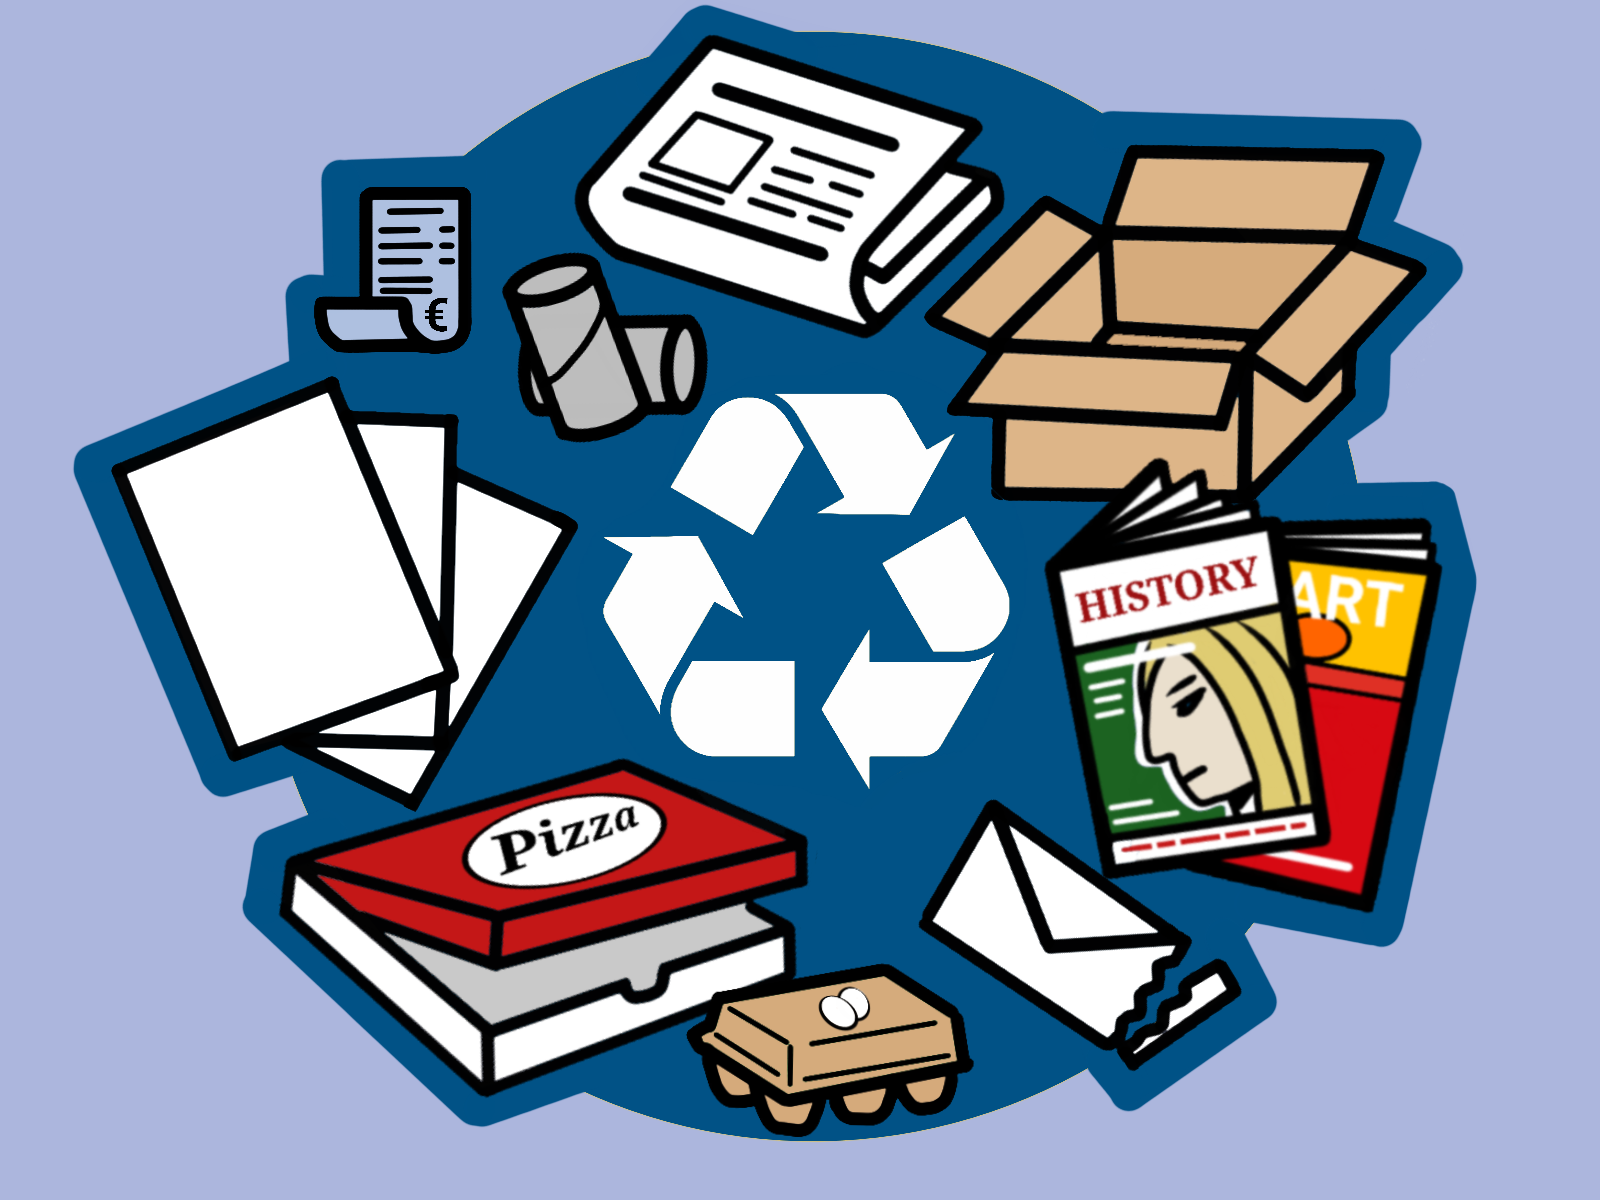 In die Papiertonne bzw. Blaue Tonne gehören Karton, Papier, Verpackungsmüll und Transportverpackungen aus Papier, Zeitschriften und Zeitungen, Verpackungskartonagen und blaue Kassenzettel